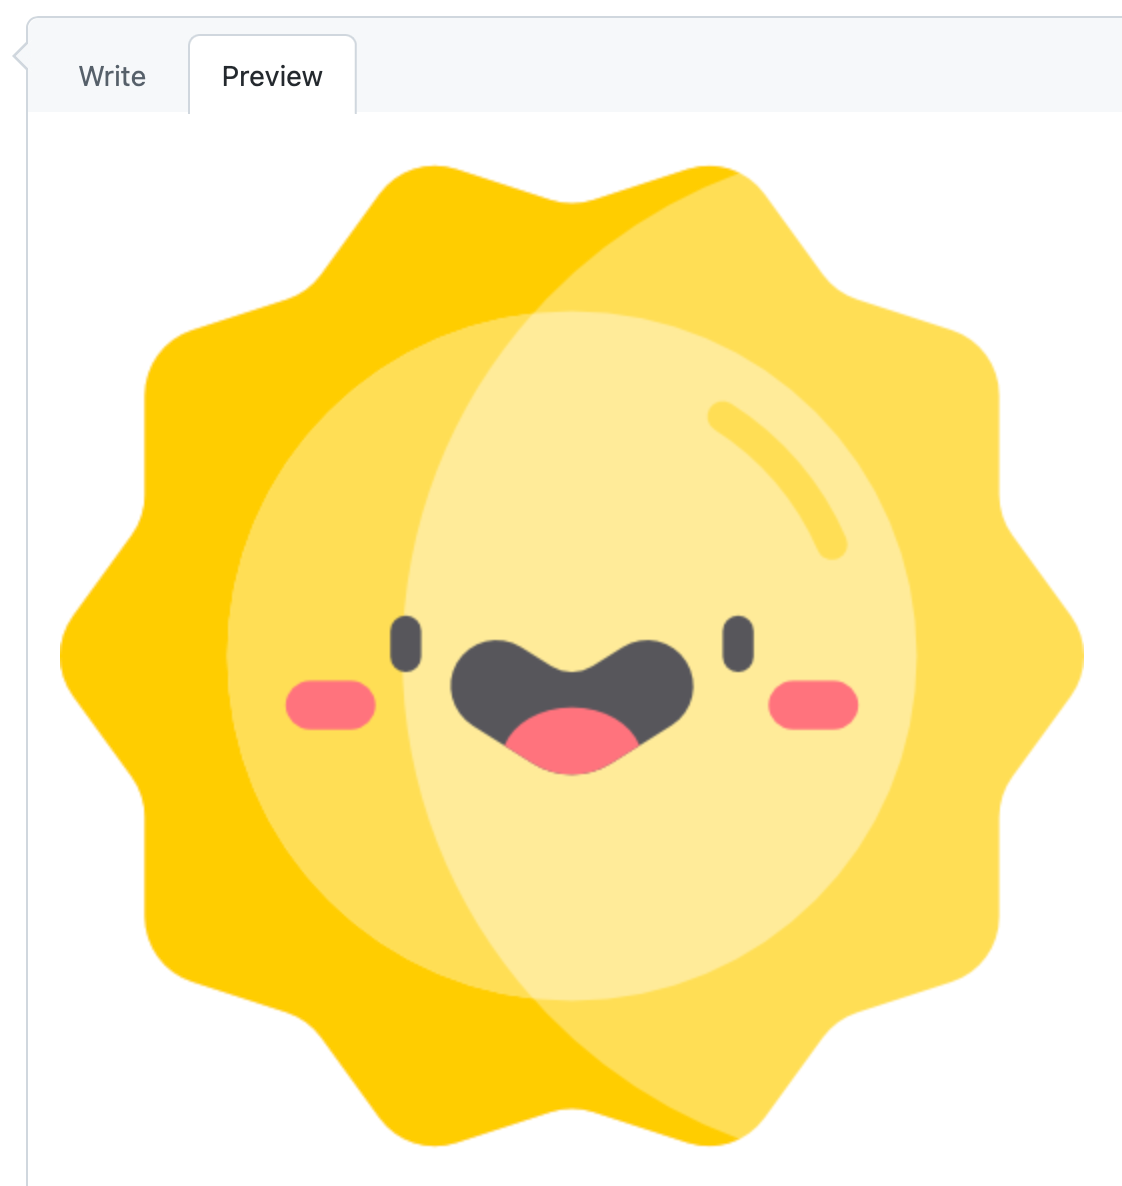 GitHub コメントの [プレビュー] タブのスクリーンショット。ライト モードになっています。 ボックスには笑顔の太陽が描かれています。